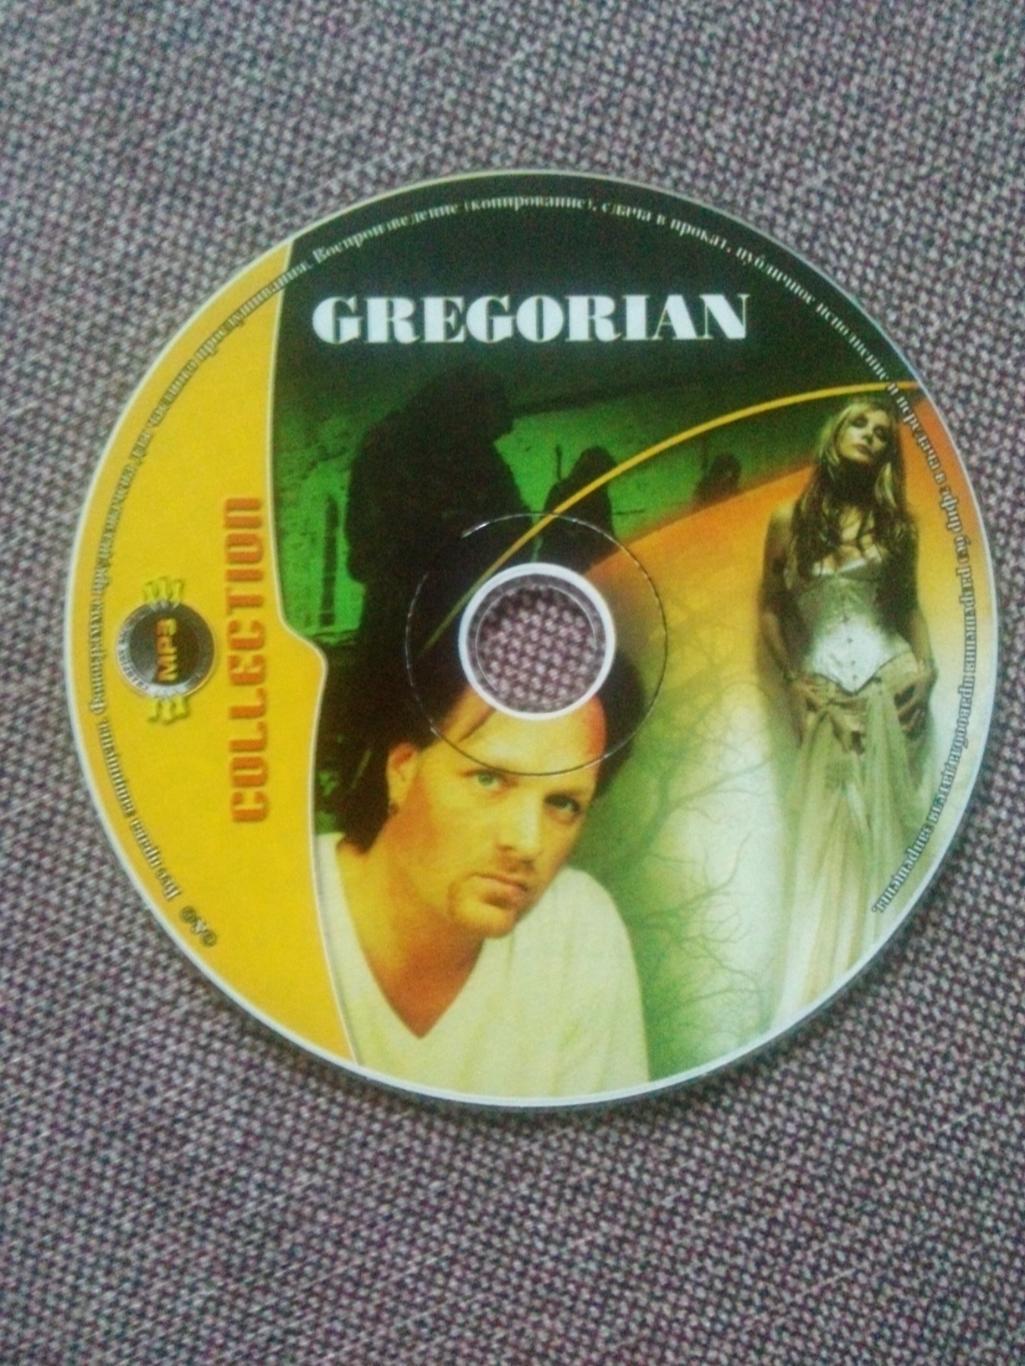 MP - 3 CD : группа Gregorian 1998 - 2007 гг. (10 альбомов) Рок - музыка 2